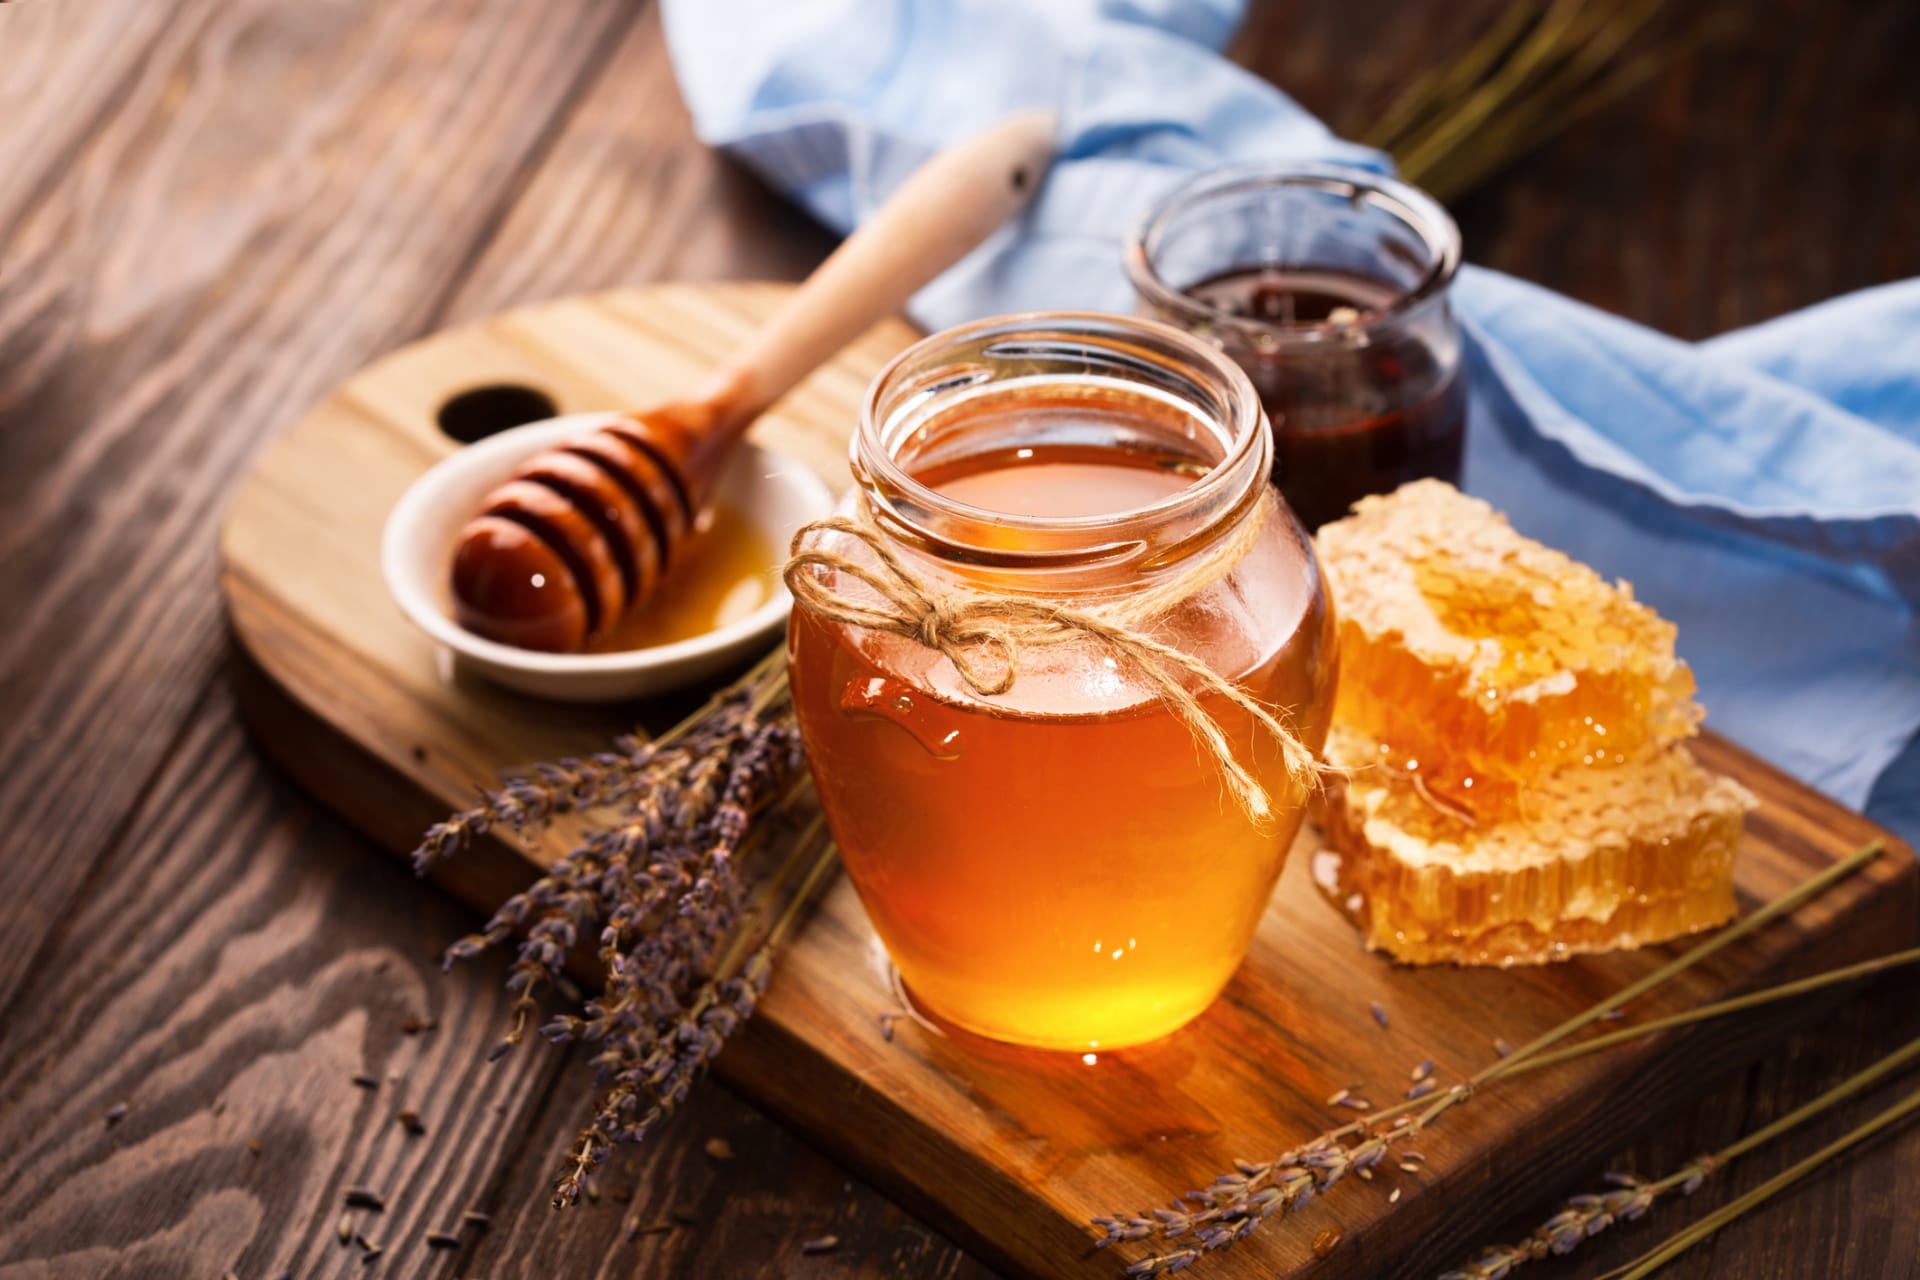 Včelí med obsahuje celou řadu zdraví prospěšných látek – od vitaminů A, skupiny B, C, D, E a K přes minerální látky železo, vápník, hořčík, sodík, draslík a fosfor až po důležité aminokyseliny a éterické oleje